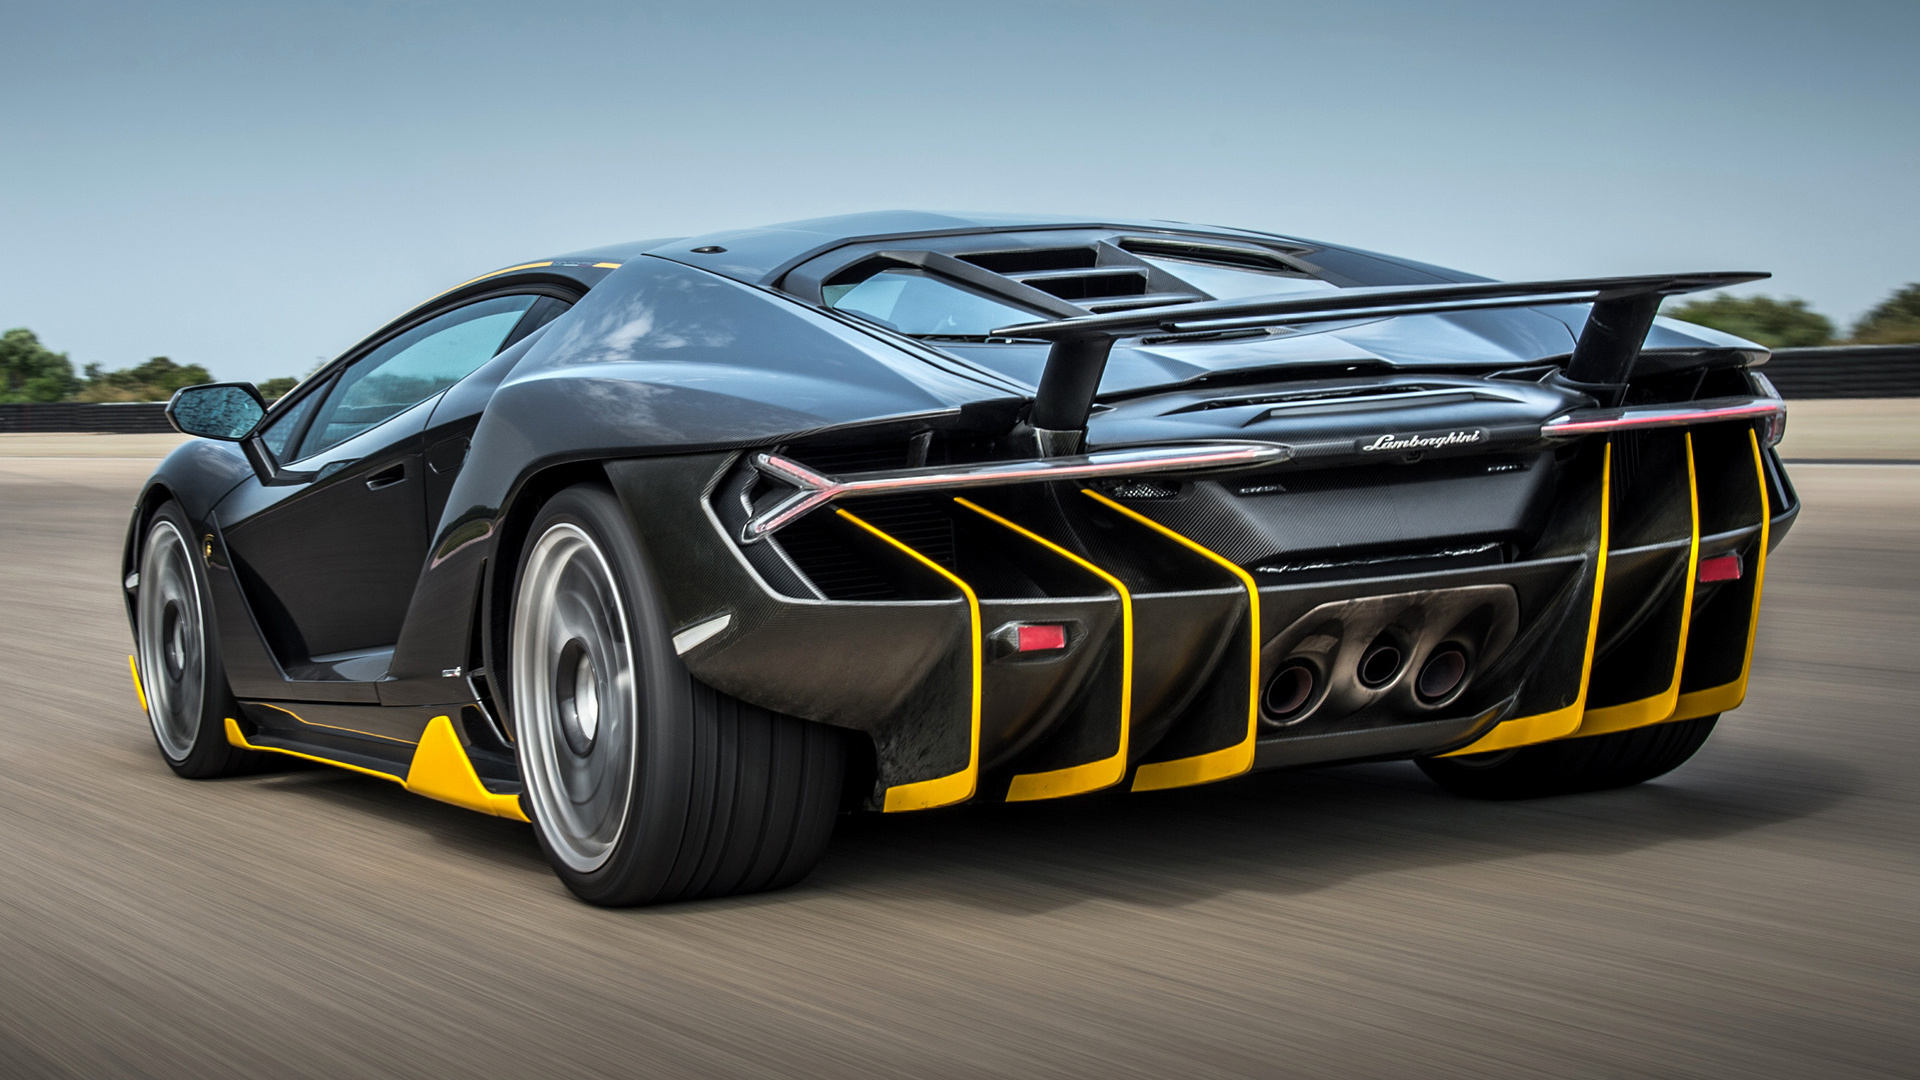 Lamborghini Car Hd Wallpapers For Mobile - HD Wallpaper 